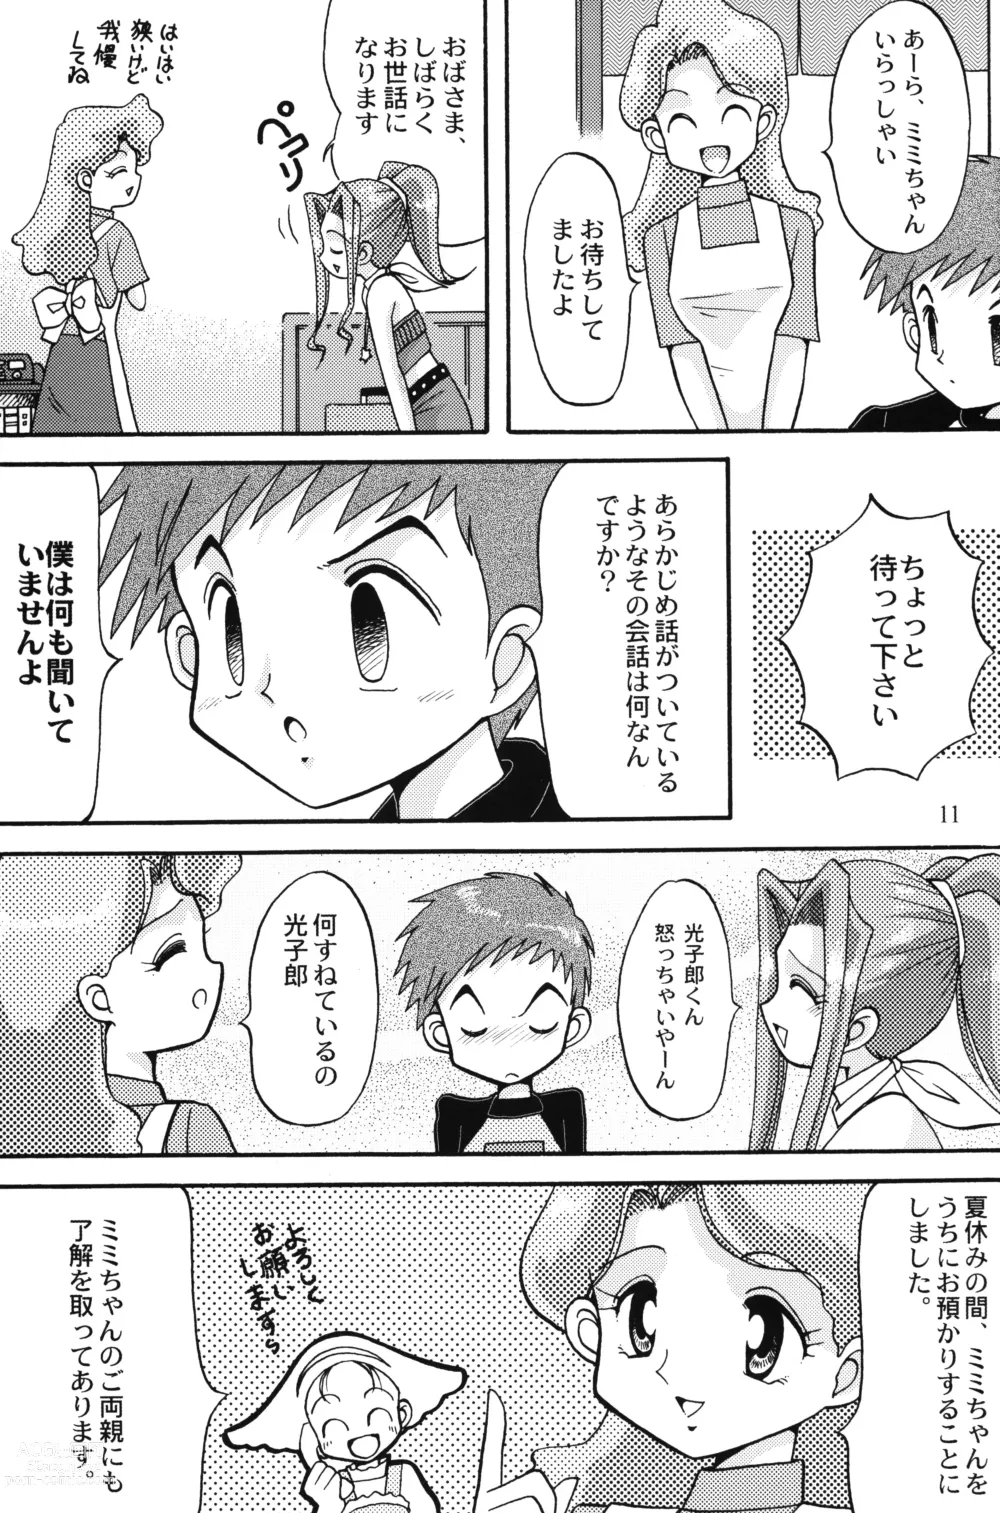 Page 10 of doujinshi Sora Mimi Hour 4